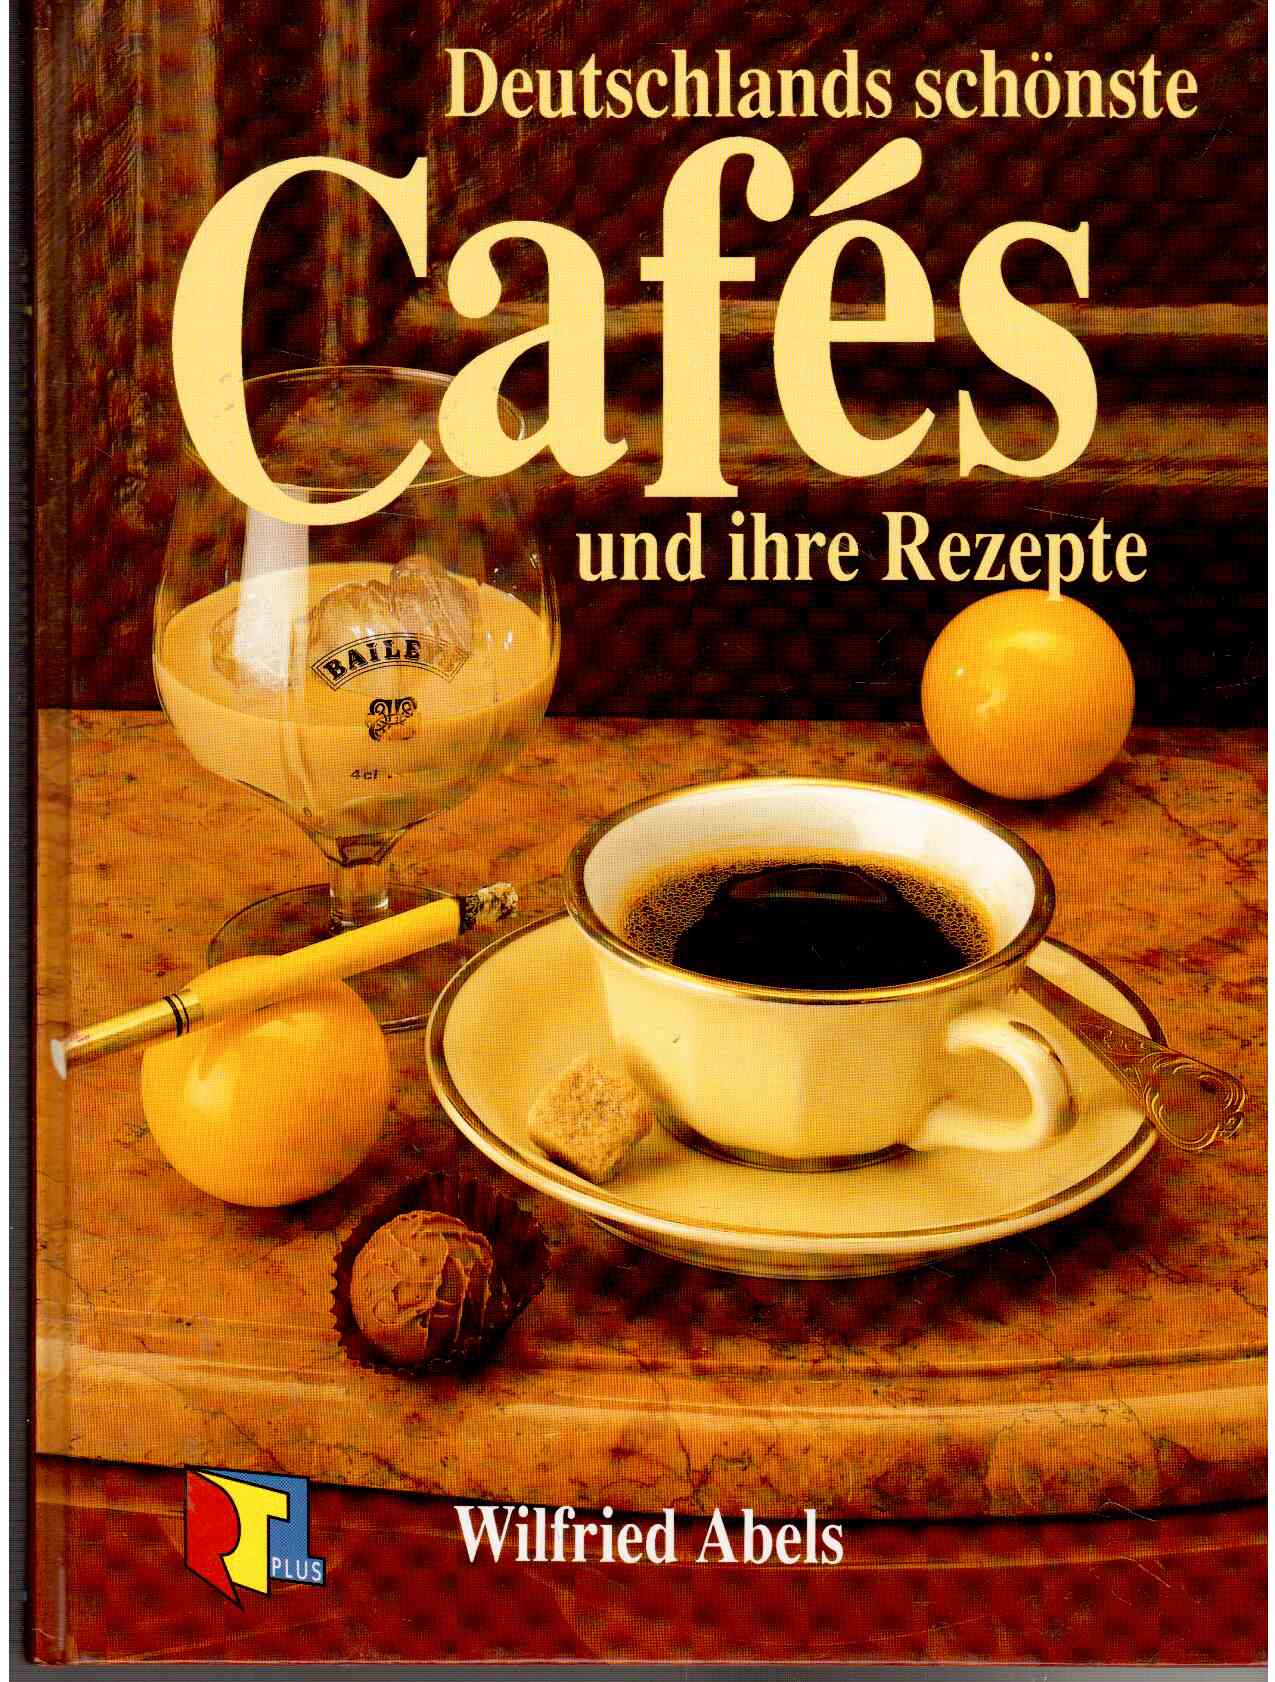 Deutschlands schönste Cafes und ihre Rezepte